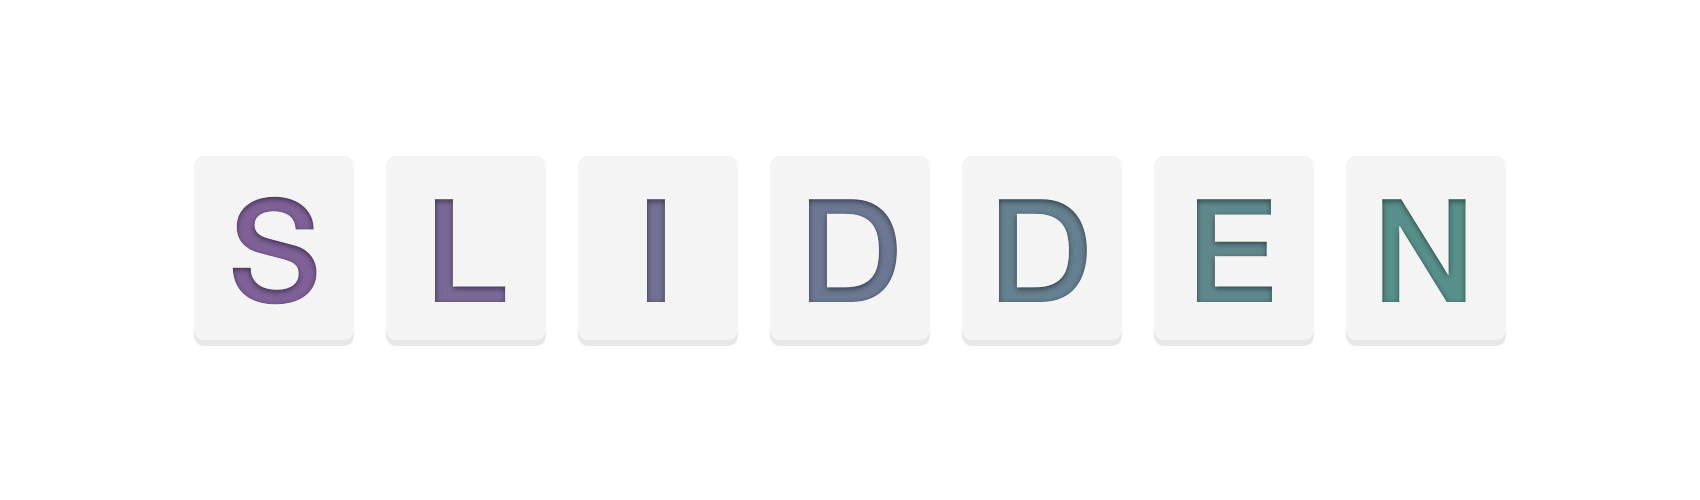 Slidden: An open source, customizable, iOS 8 keyboard written in Swift.